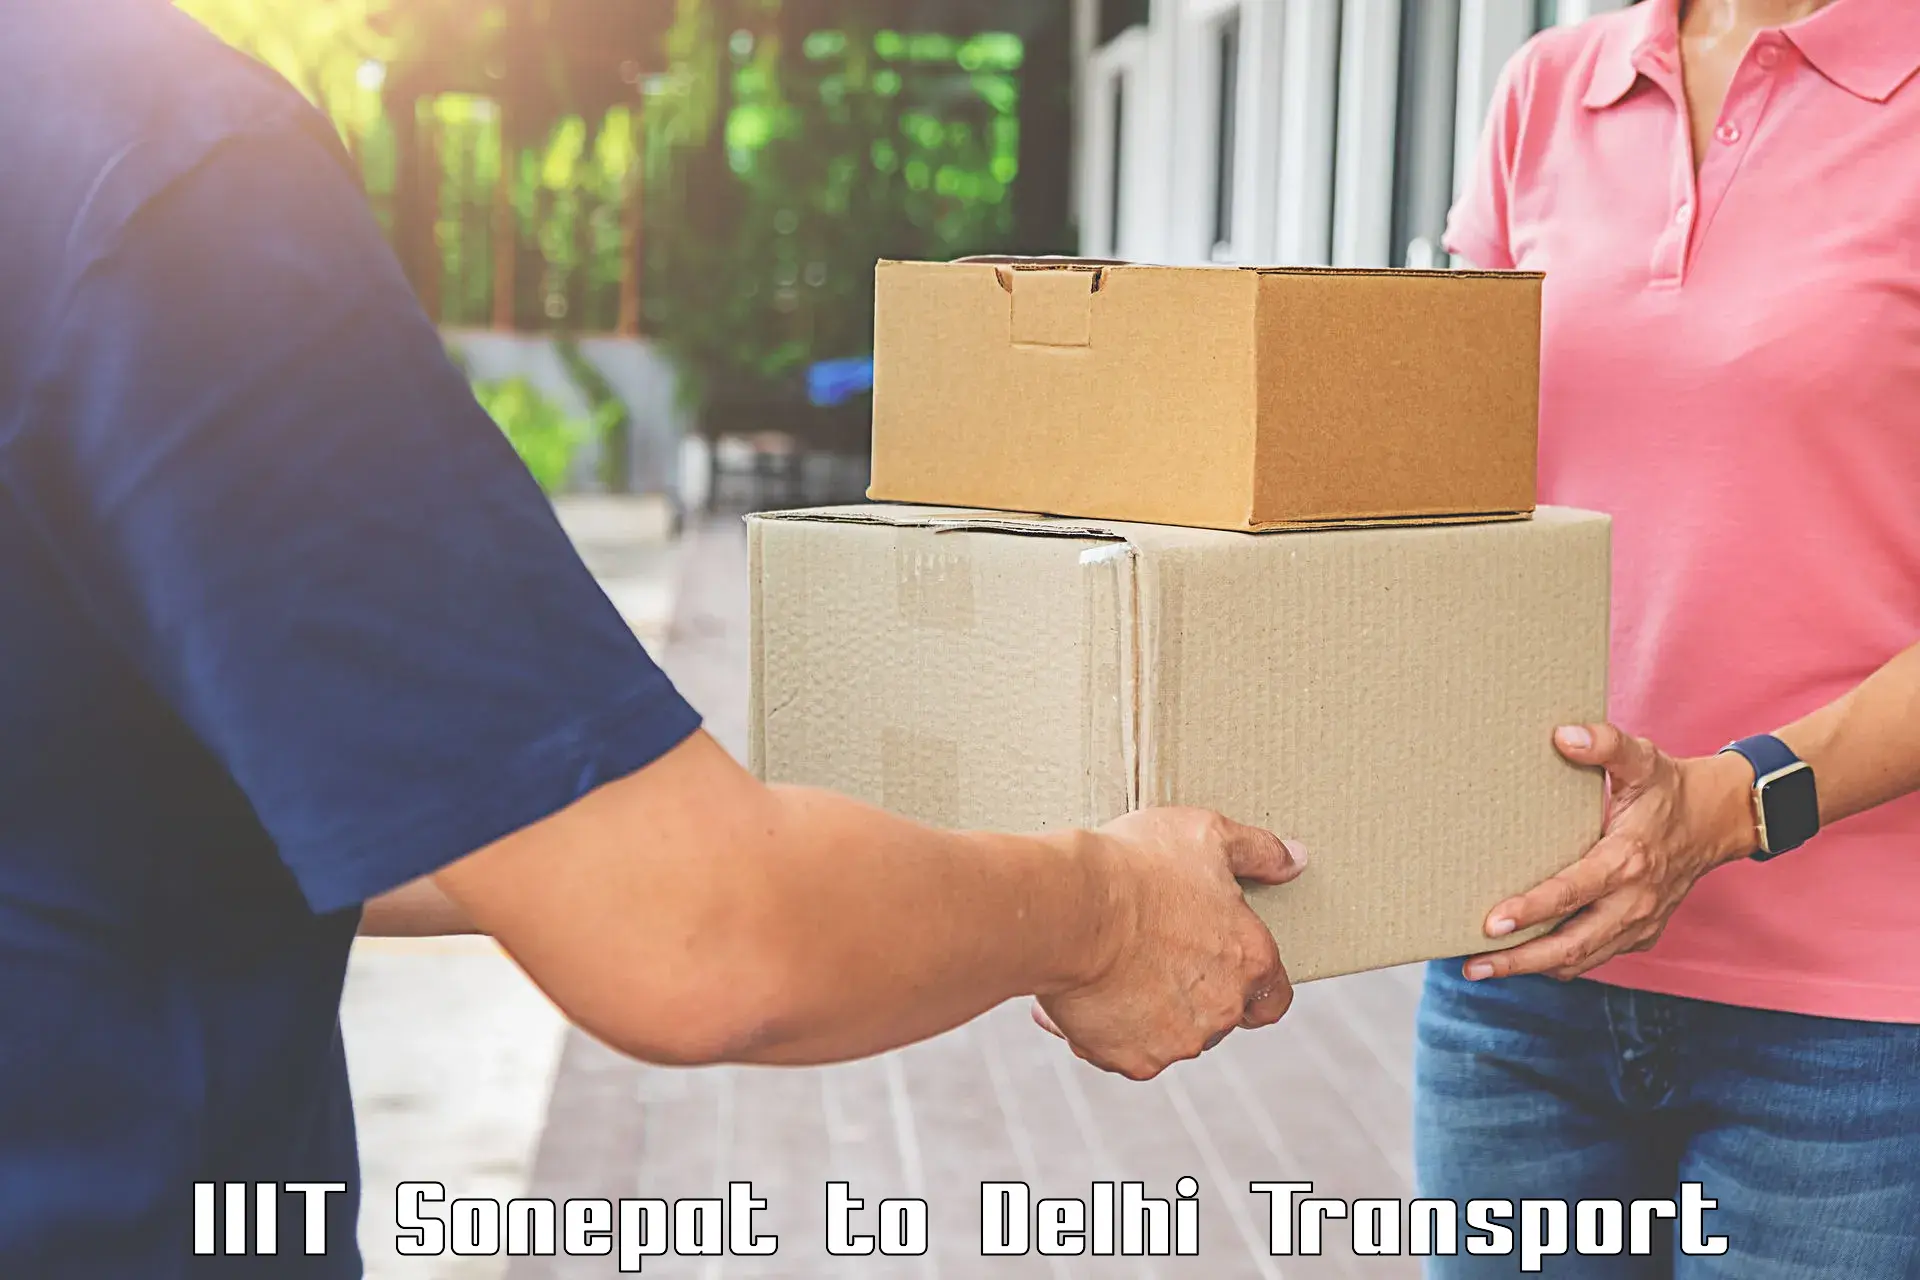 Bike shipping service IIIT Sonepat to Jawaharlal Nehru University New Delhi